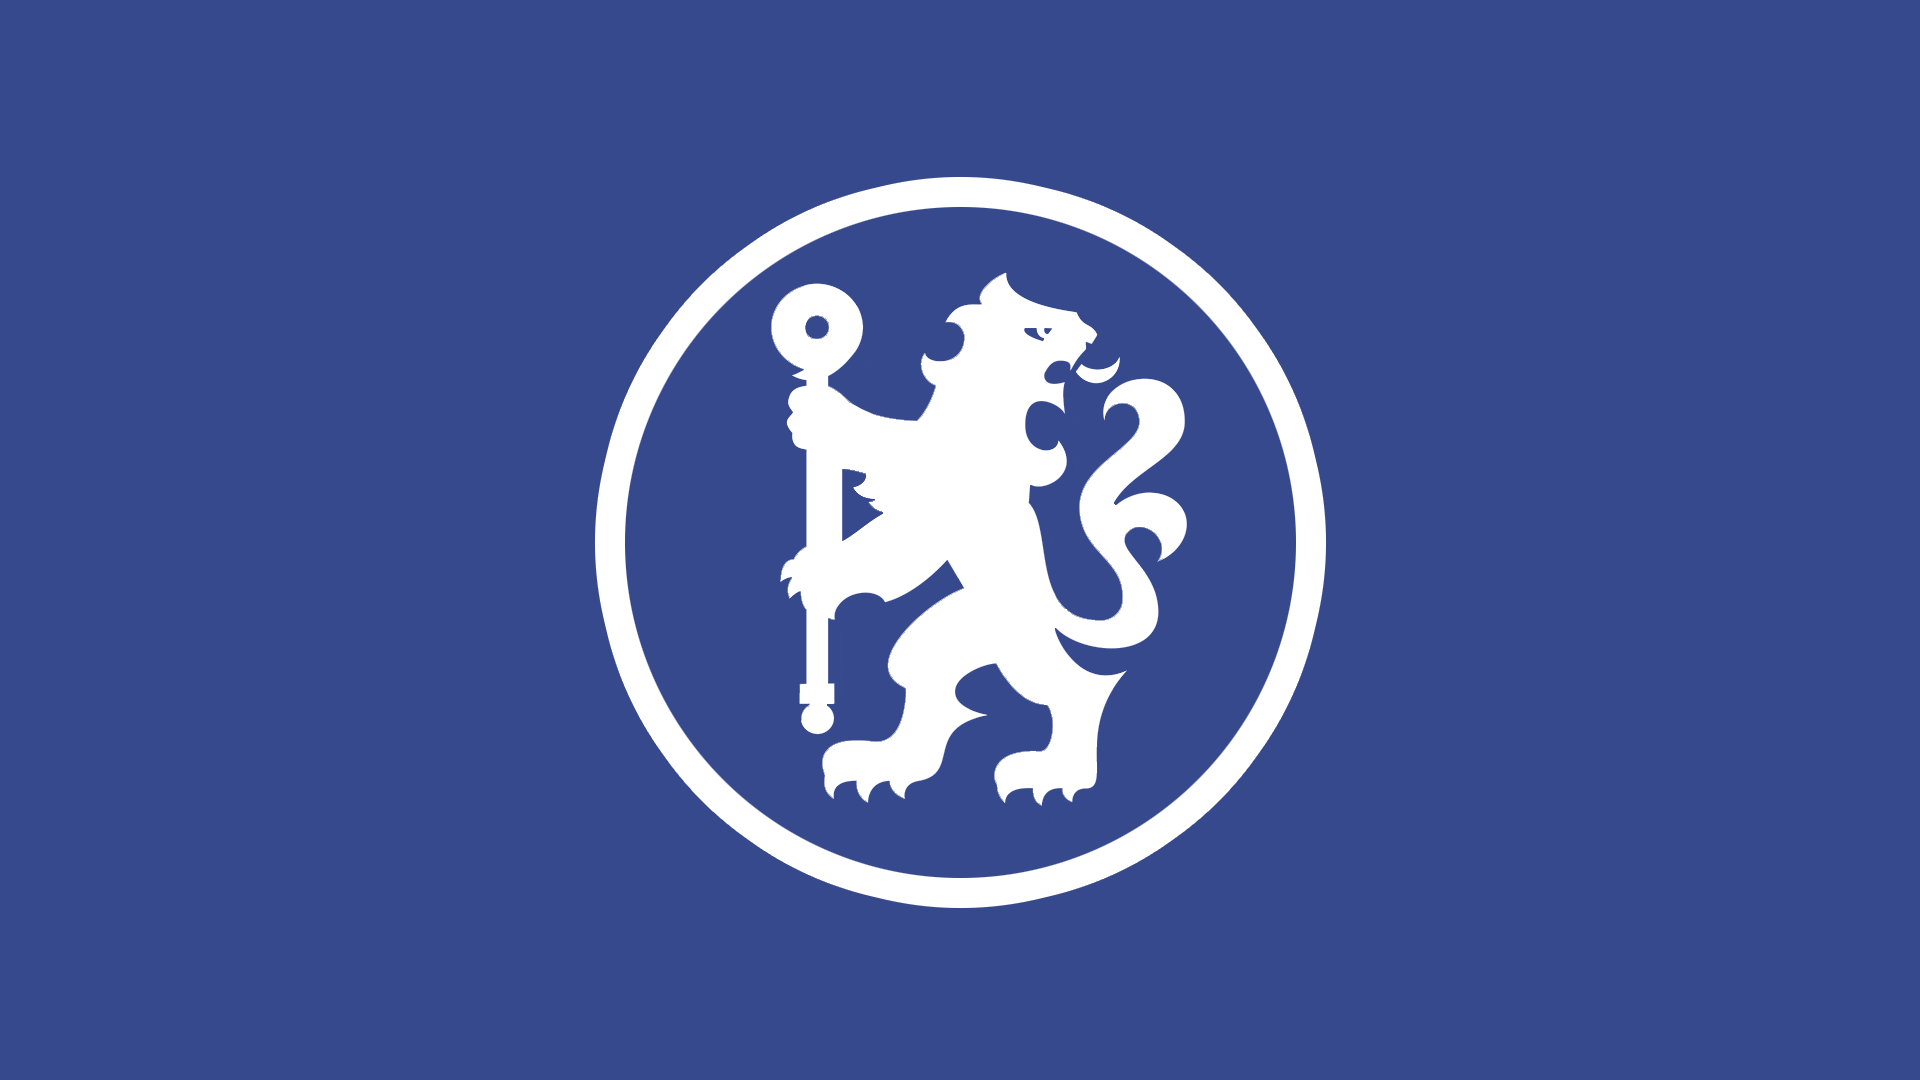 HDscreen: Chelsea Chelsea FC EPL English Premier League abstract ...